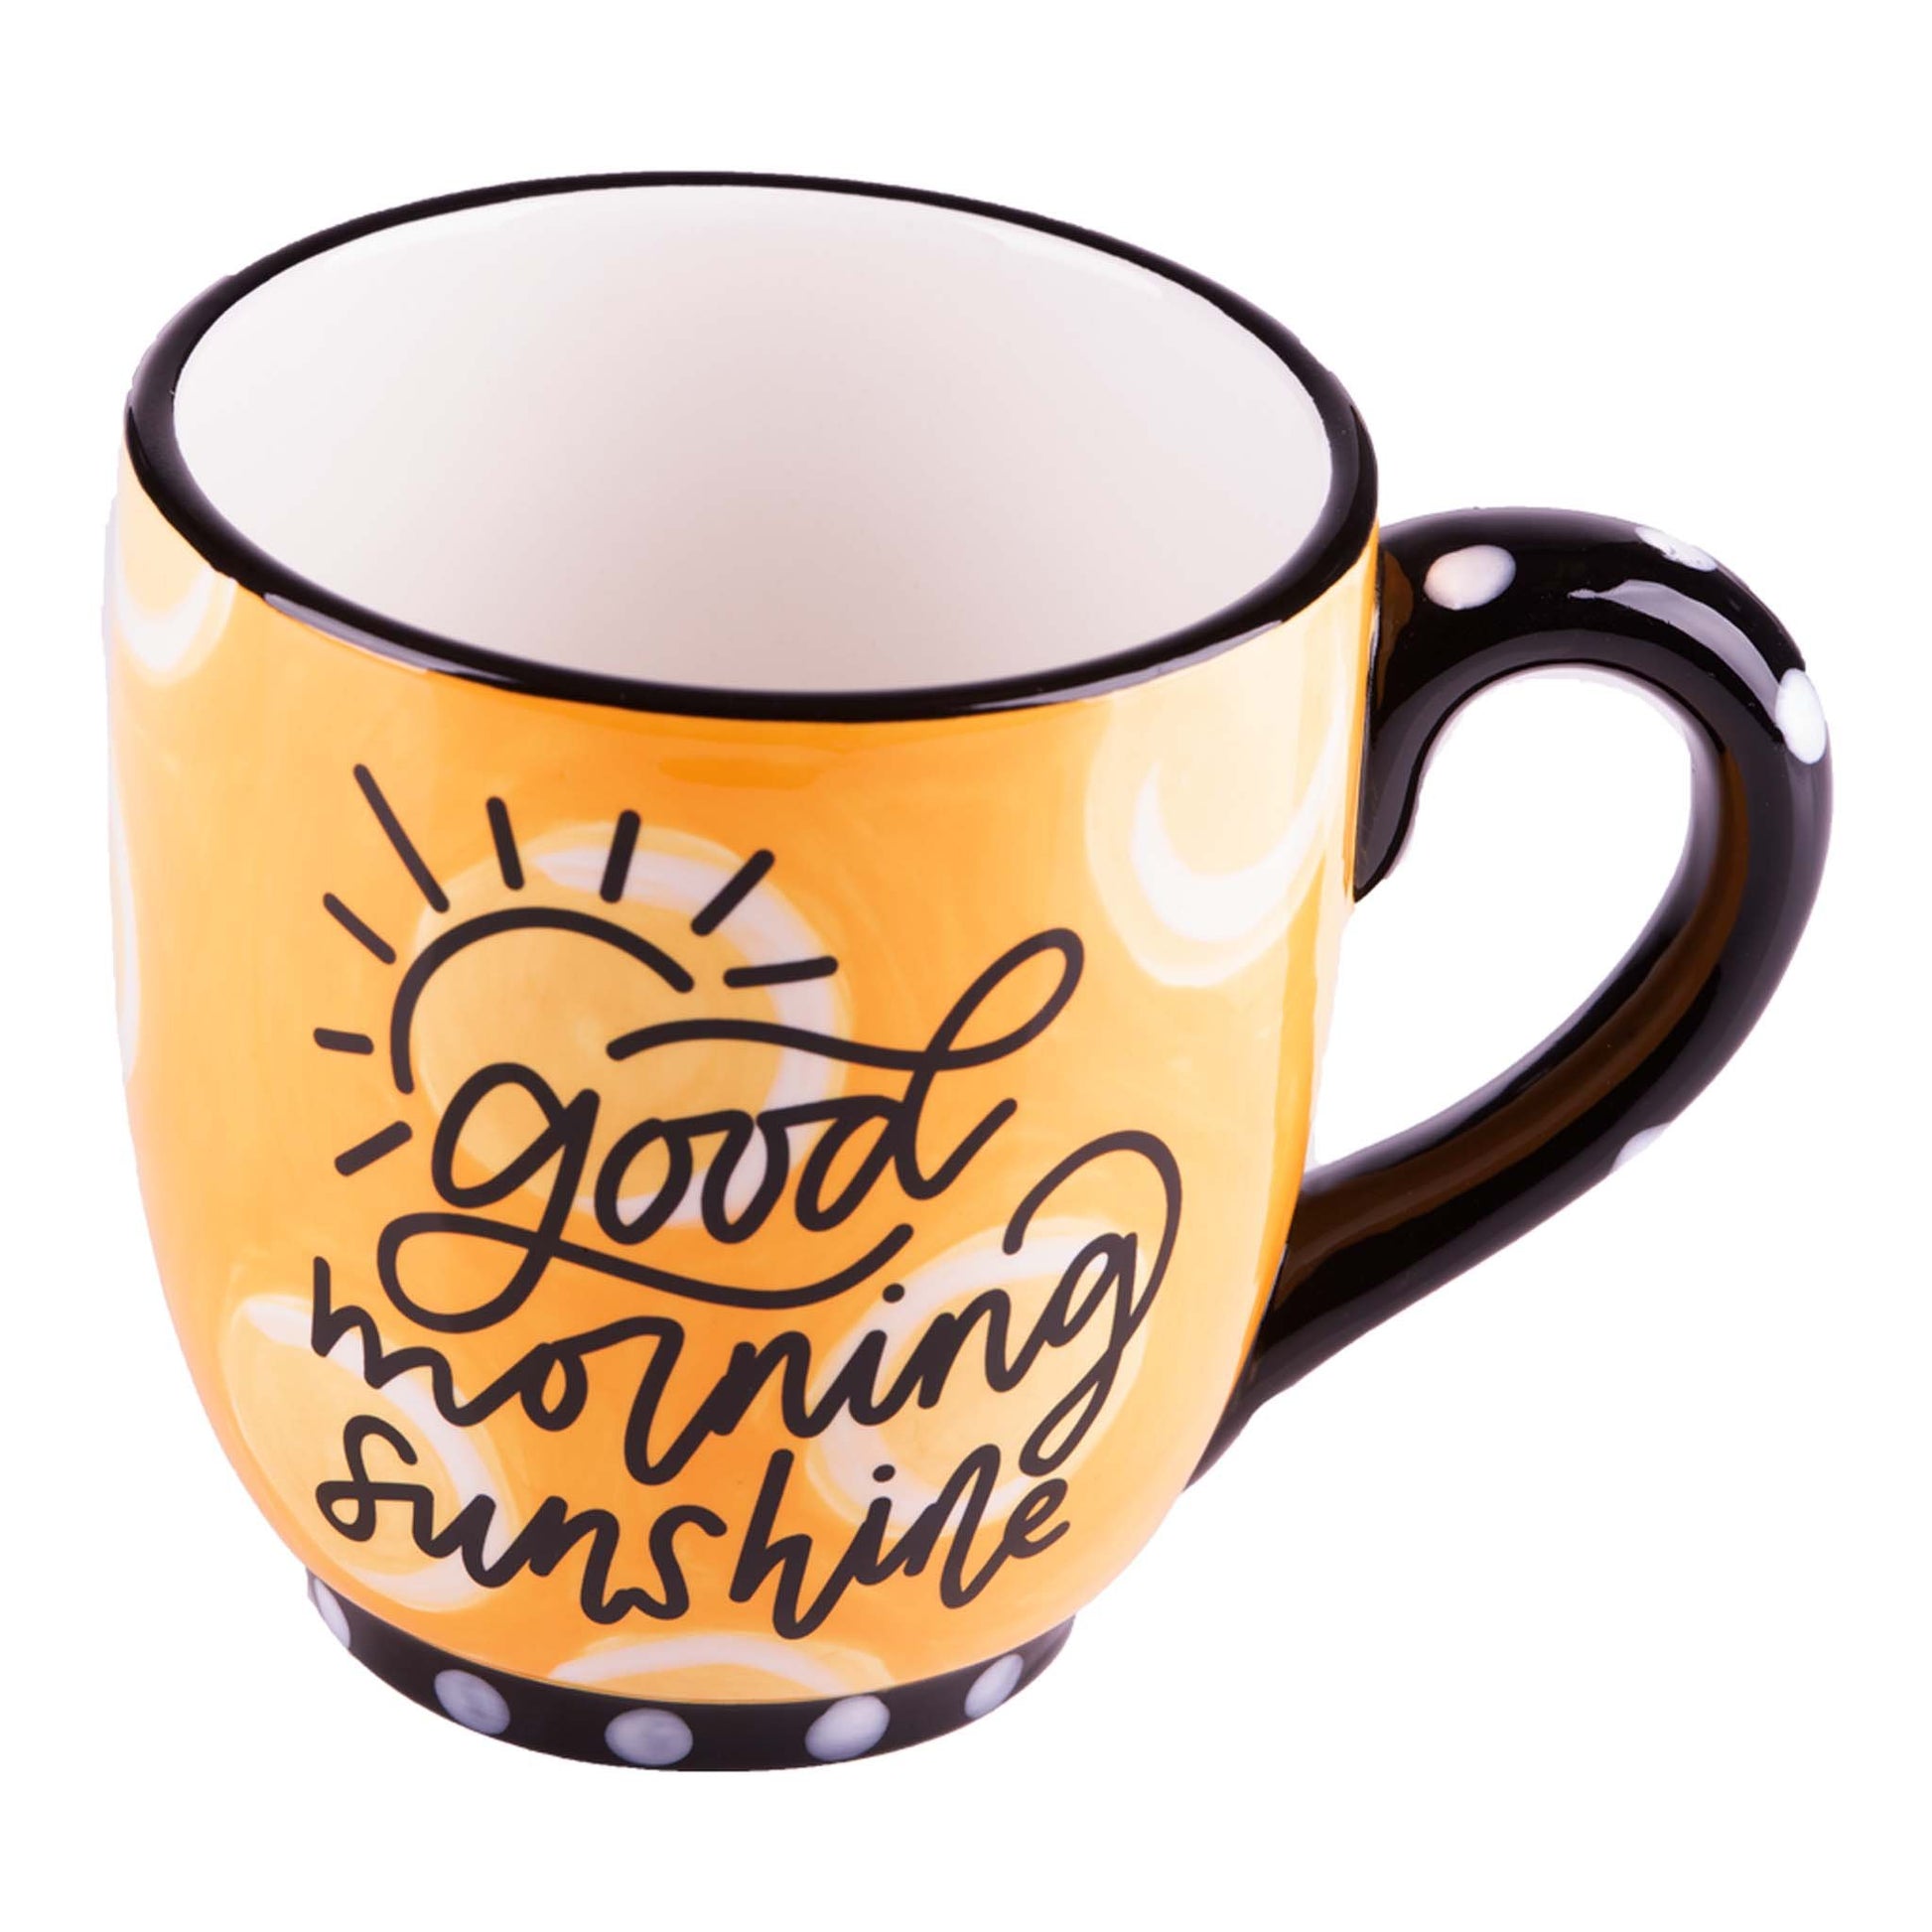 good morning sunshine mug on a white background